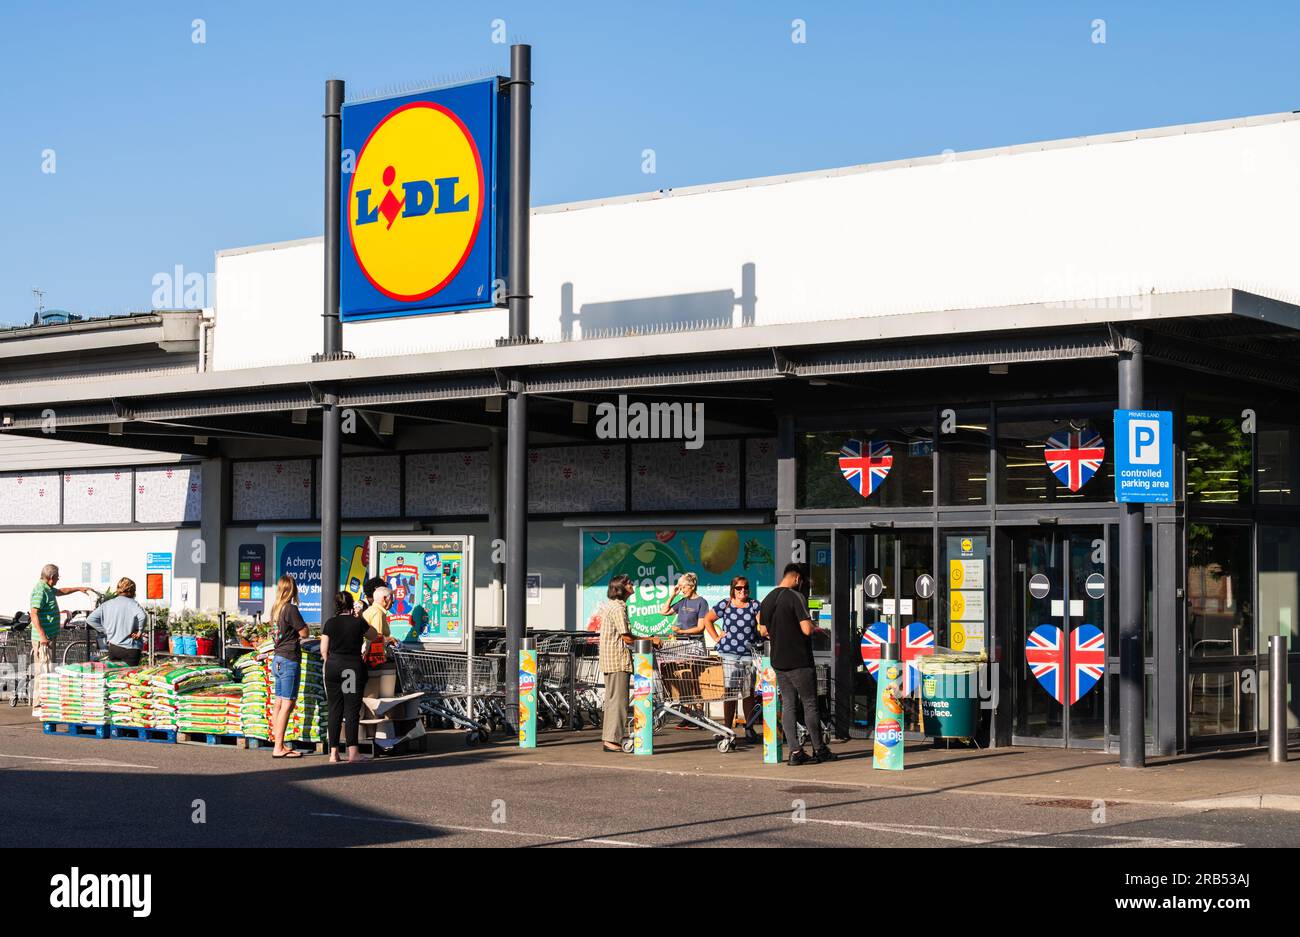 Fila di persone in fila all'esterno di un grande negozio di alimentari e alimentari Lidl o di un negozio di alimentari, in attesa che apra a Littlehampton, West Sussex, Regno Unito. Foto Stock